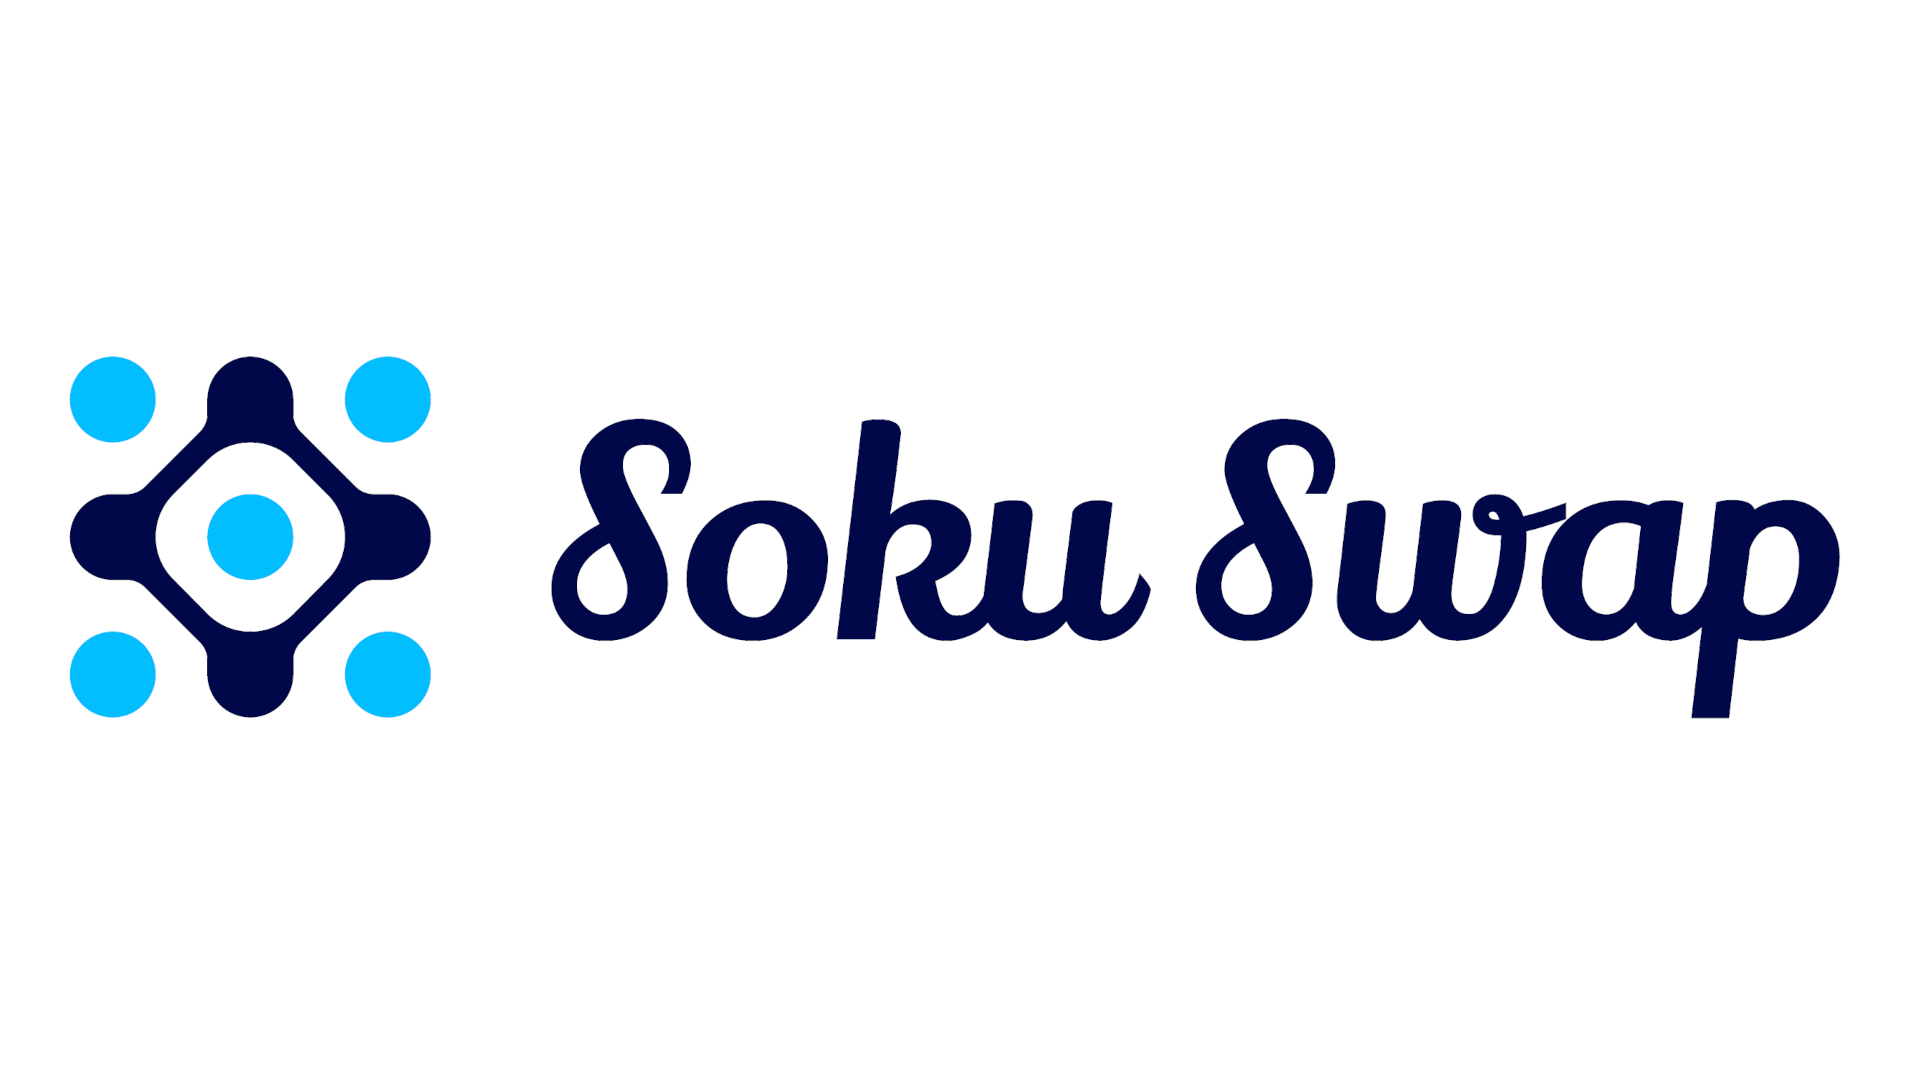 SokuSwap-Logo-Dark-Blue-1920x1080.png